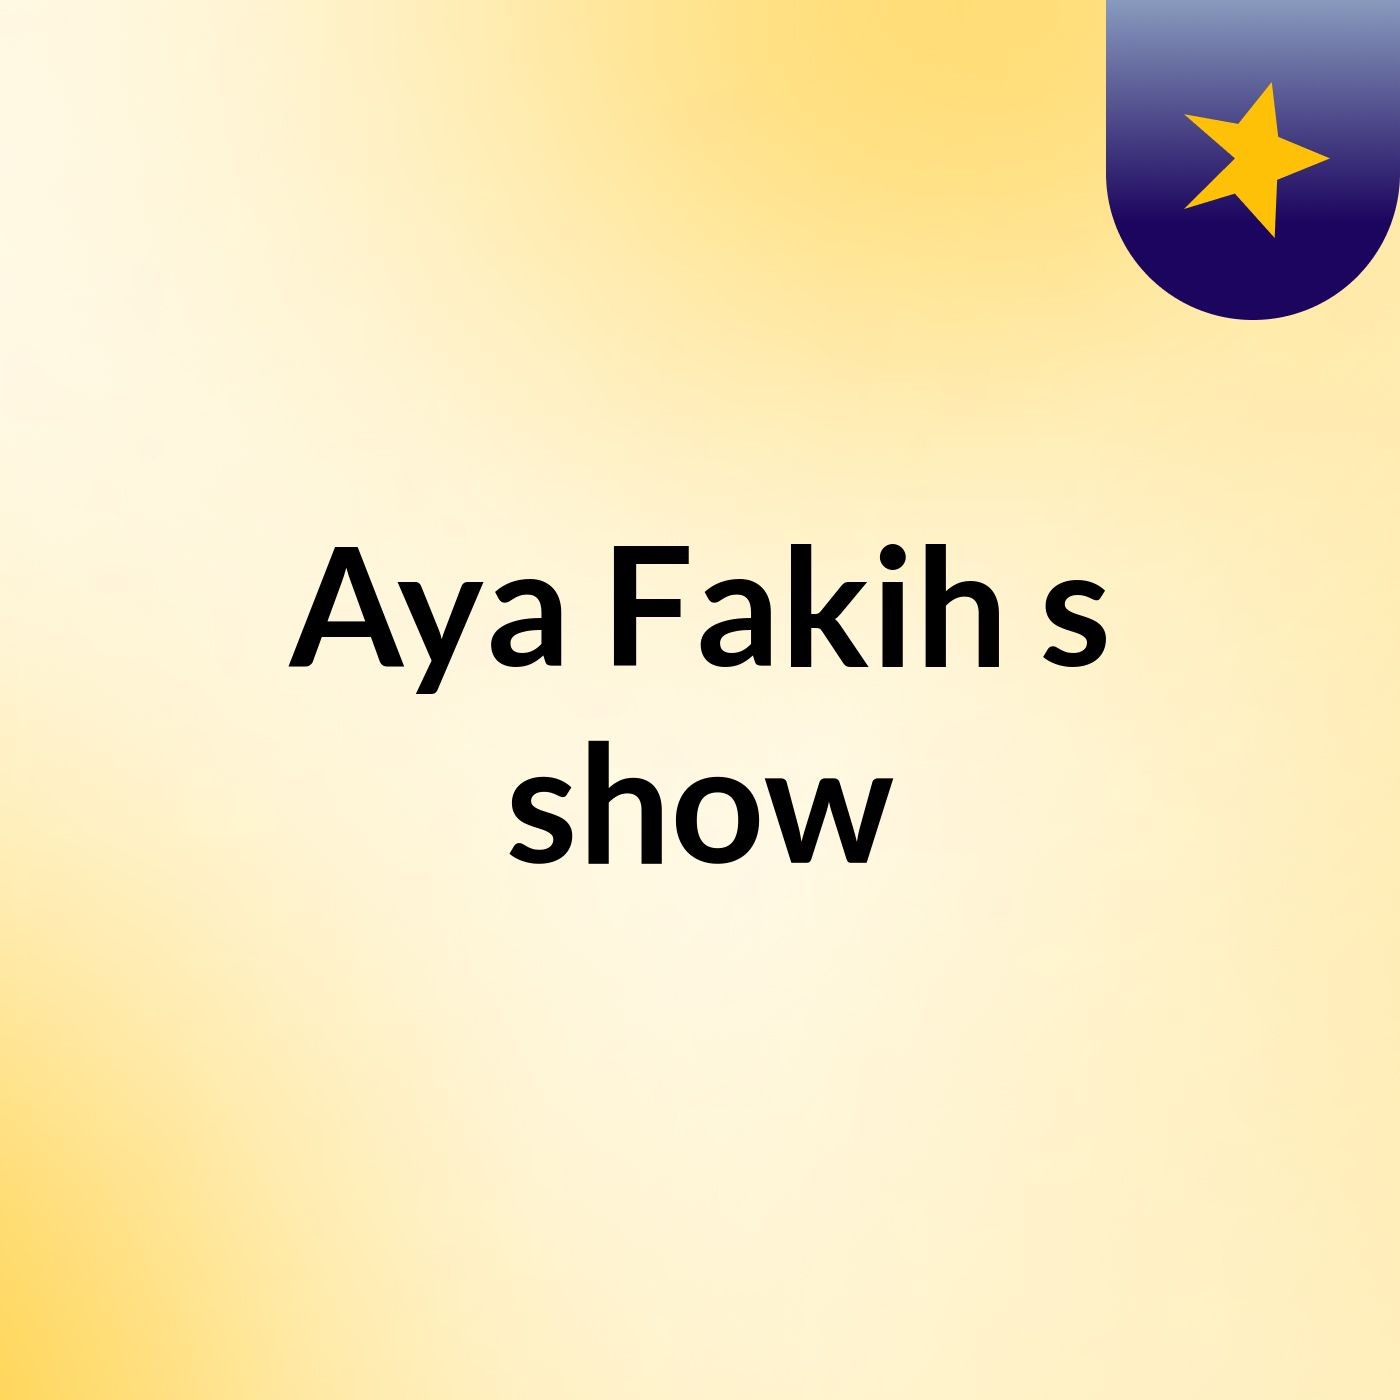 Aya Fakih's show